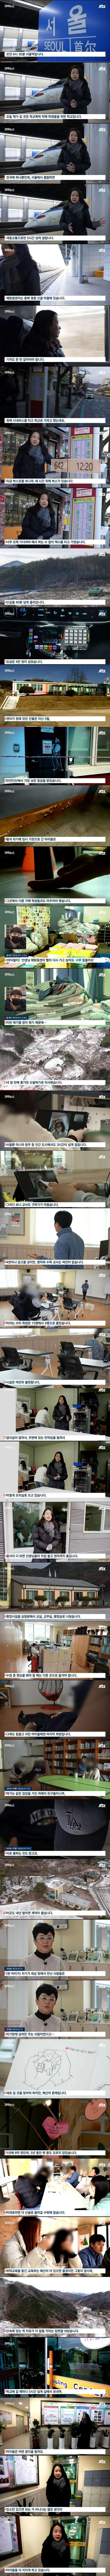 국내 유일 학폭 피해자 학교 ''해맑음 센터'' 근황